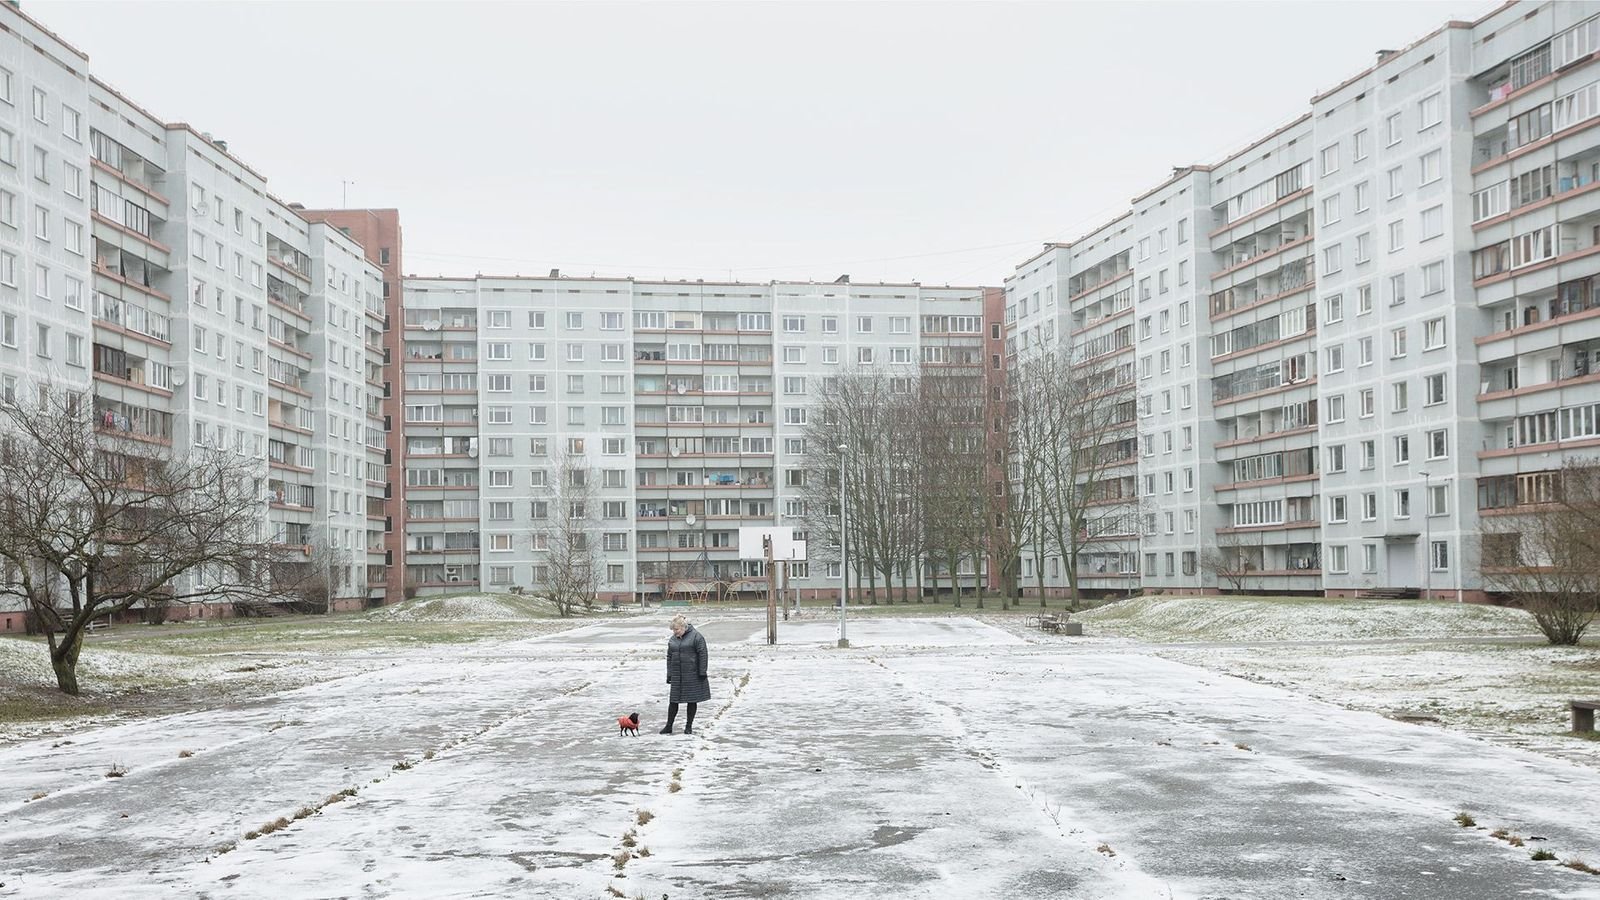 Boa parte da população da Letônia vive isolada em apartamentos.